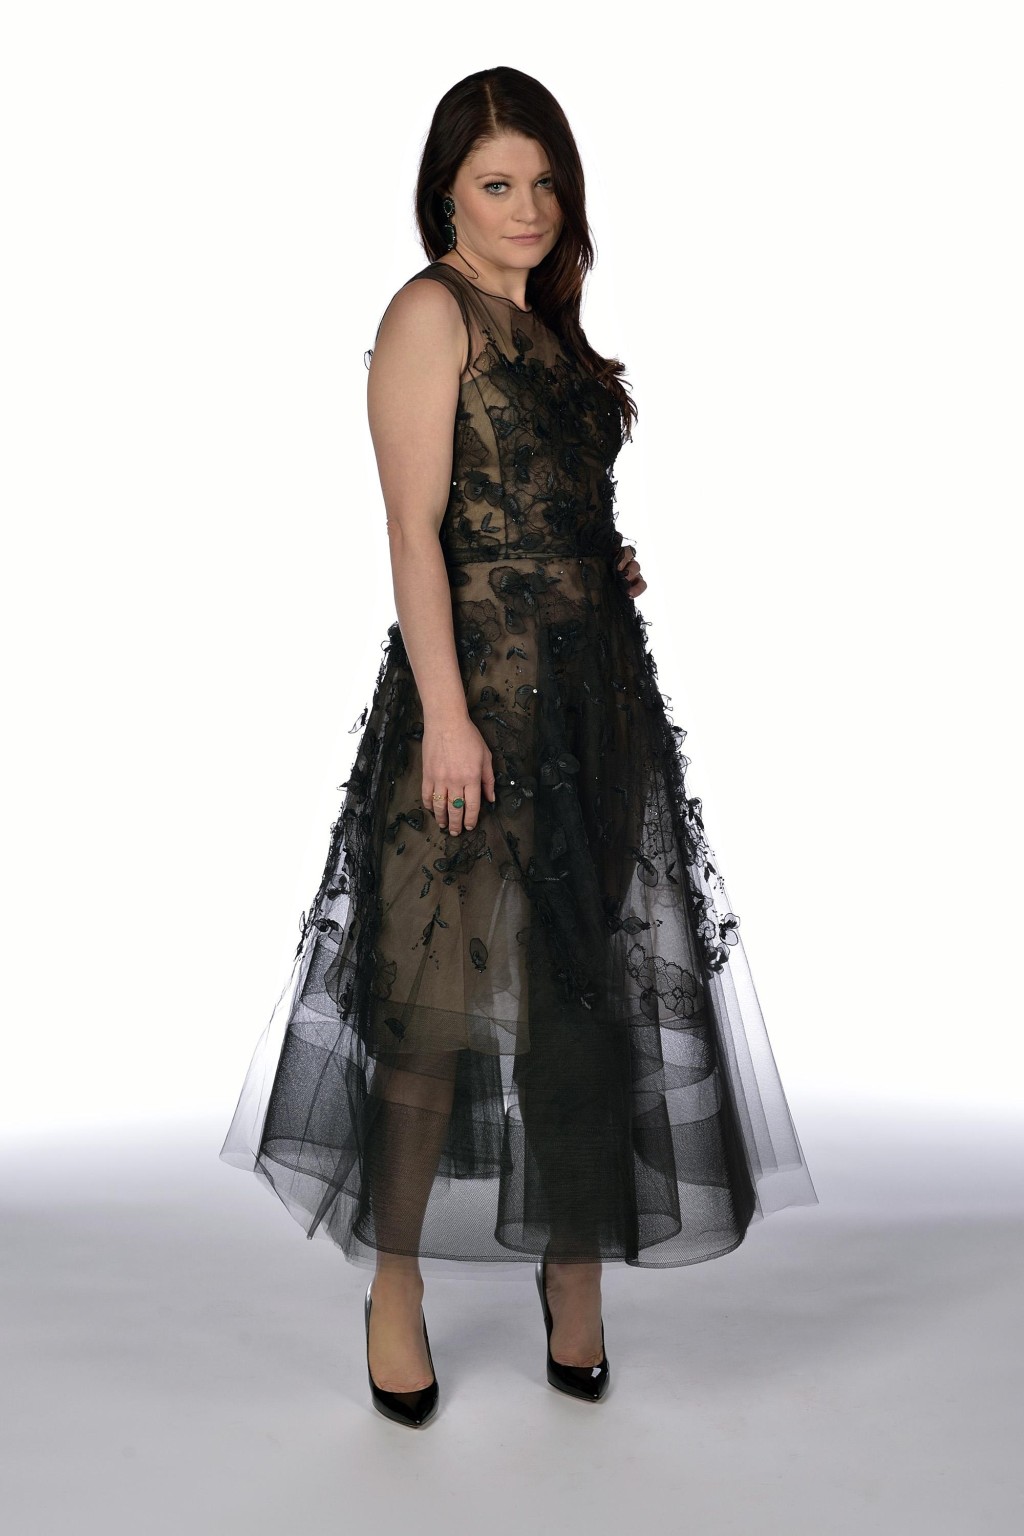 Emilie de Ravin portant une robe noire en dentelle lors de la projection de la saison 4 de Once upon a time.
 #75185141